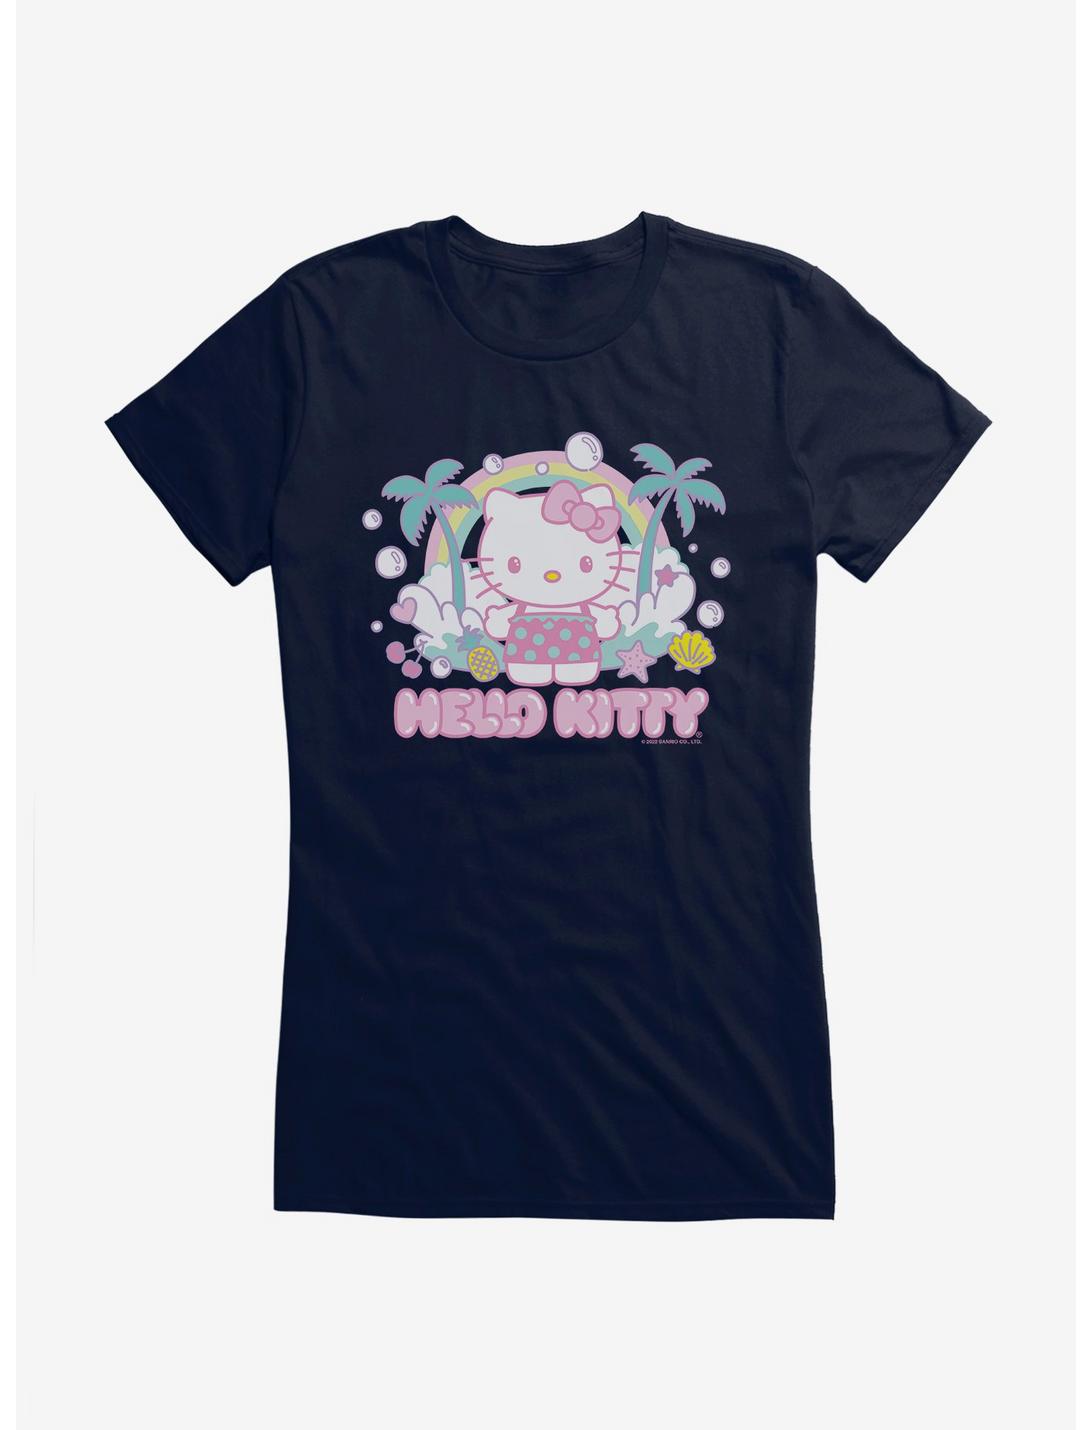 Hello Kitty Kawaii Vacation Bubble Dreams Girls T-Shirt, NAVY, hi-res